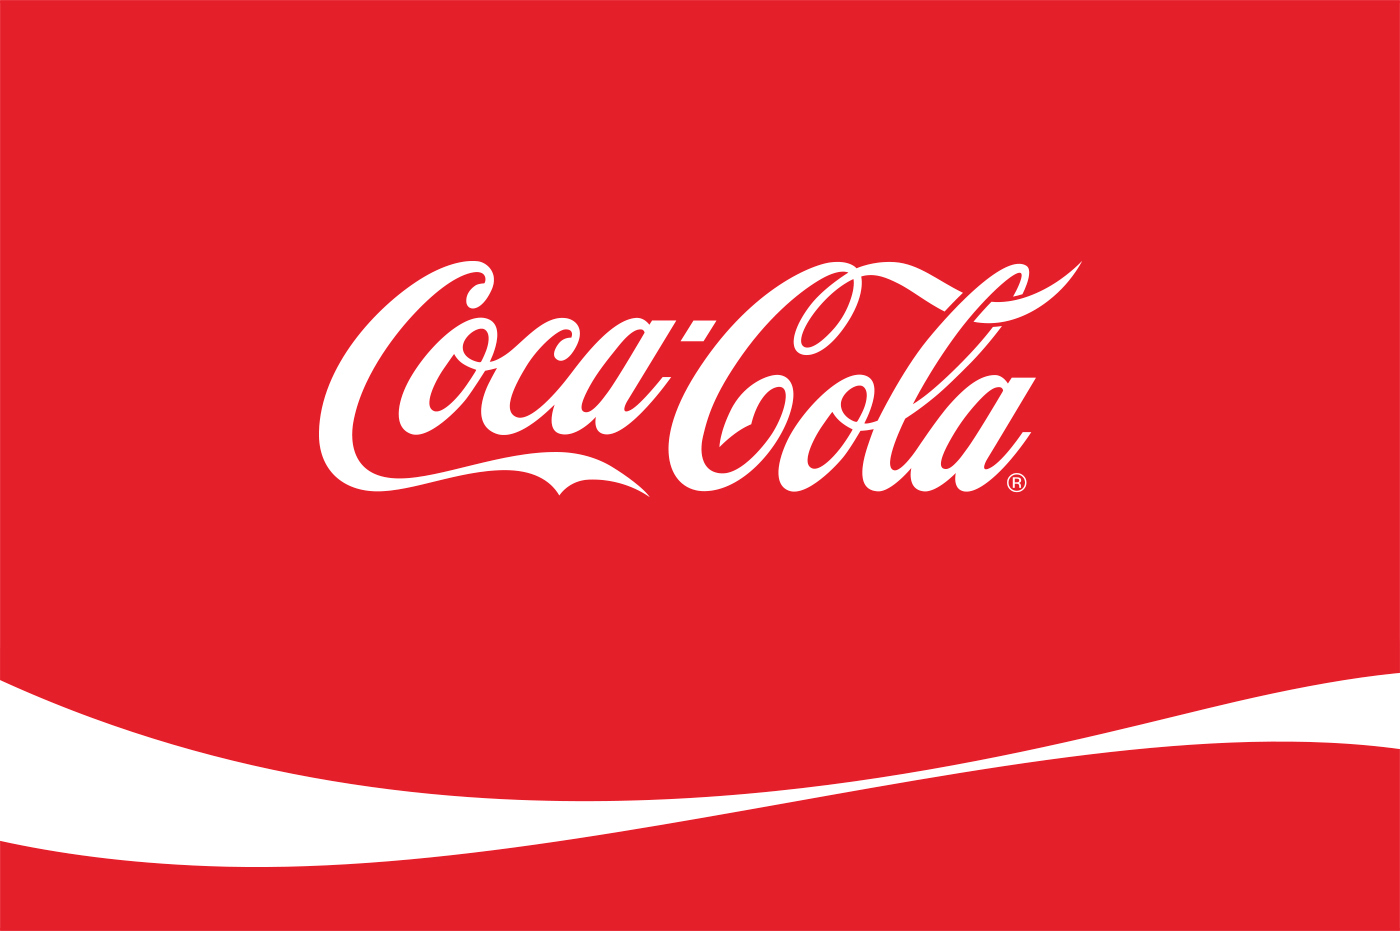 The Coca - Cola Company